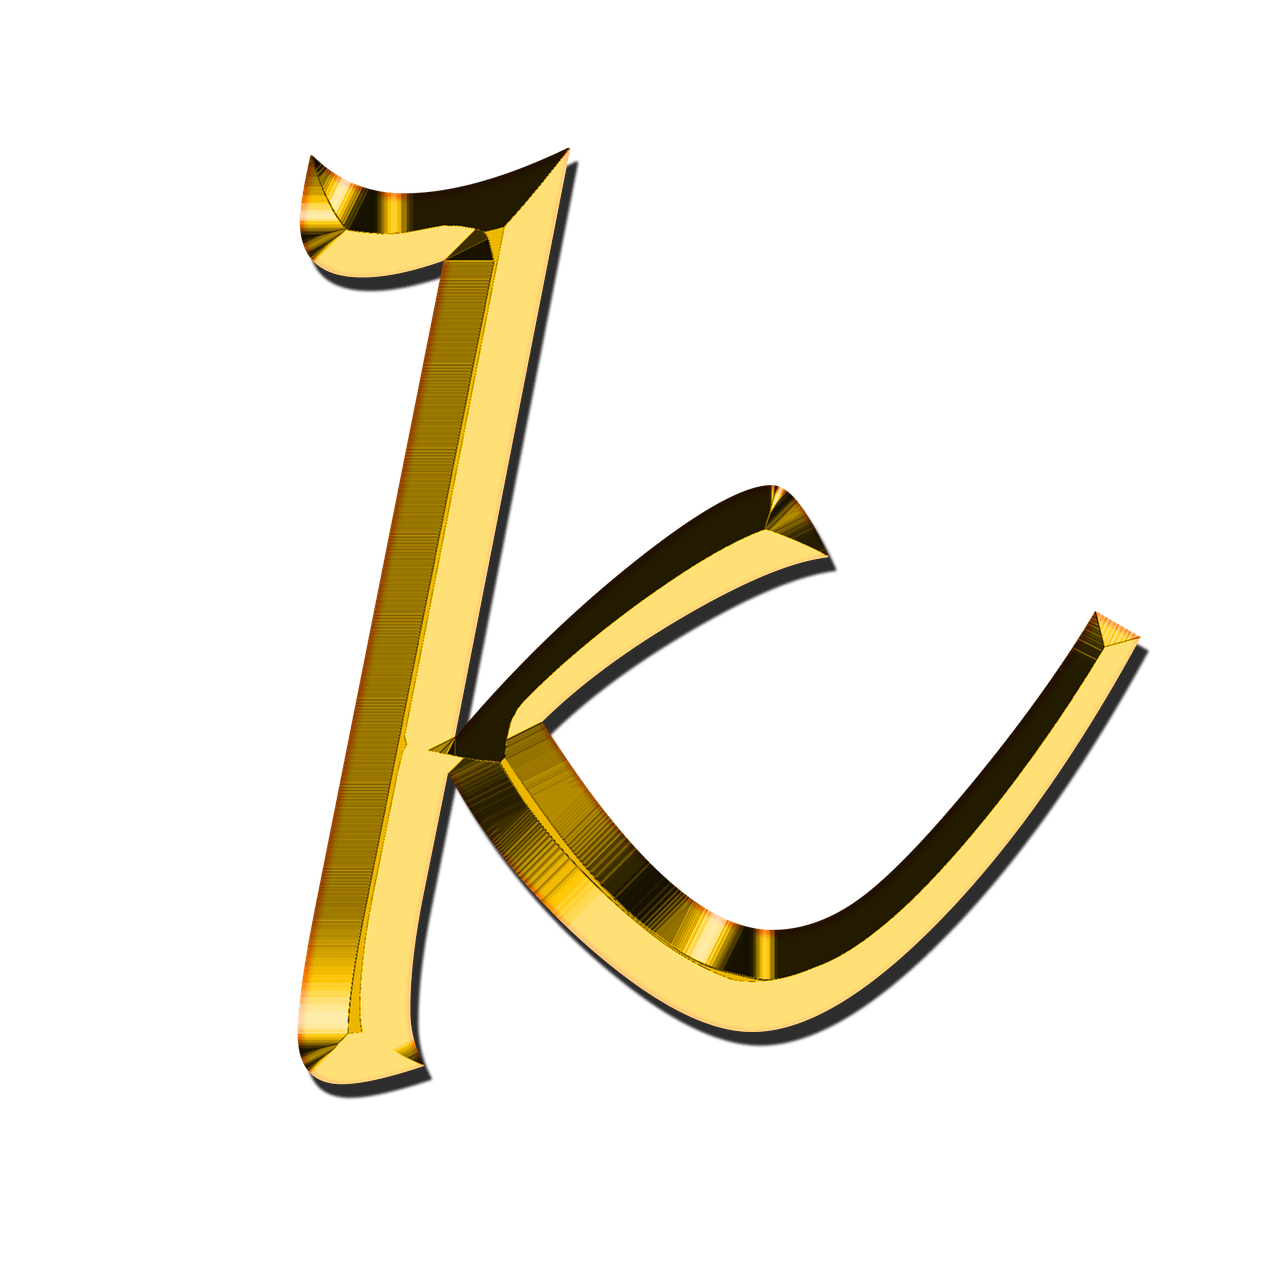 K Letter Download Free Image PNG Image